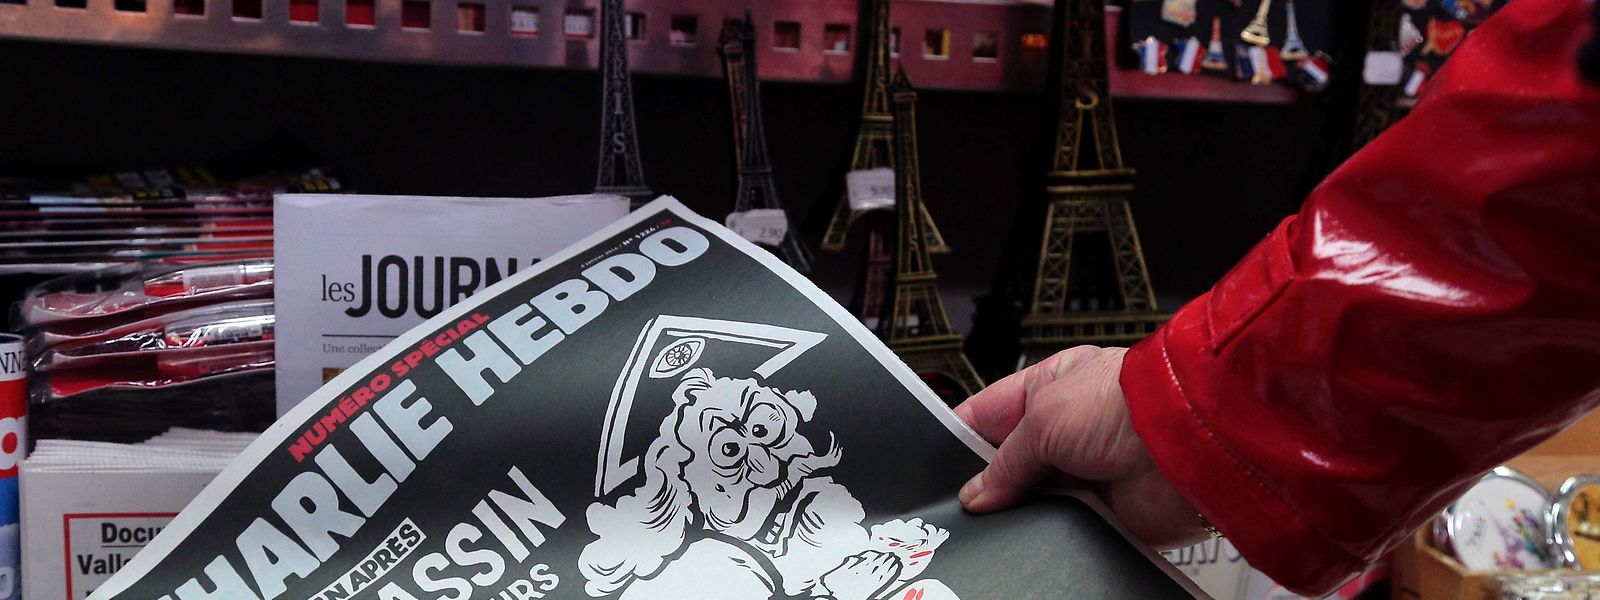 Un dieu assassin, encore armé et toujours en fuite: la couverture de Charlie Hebdo, un an après le drame.